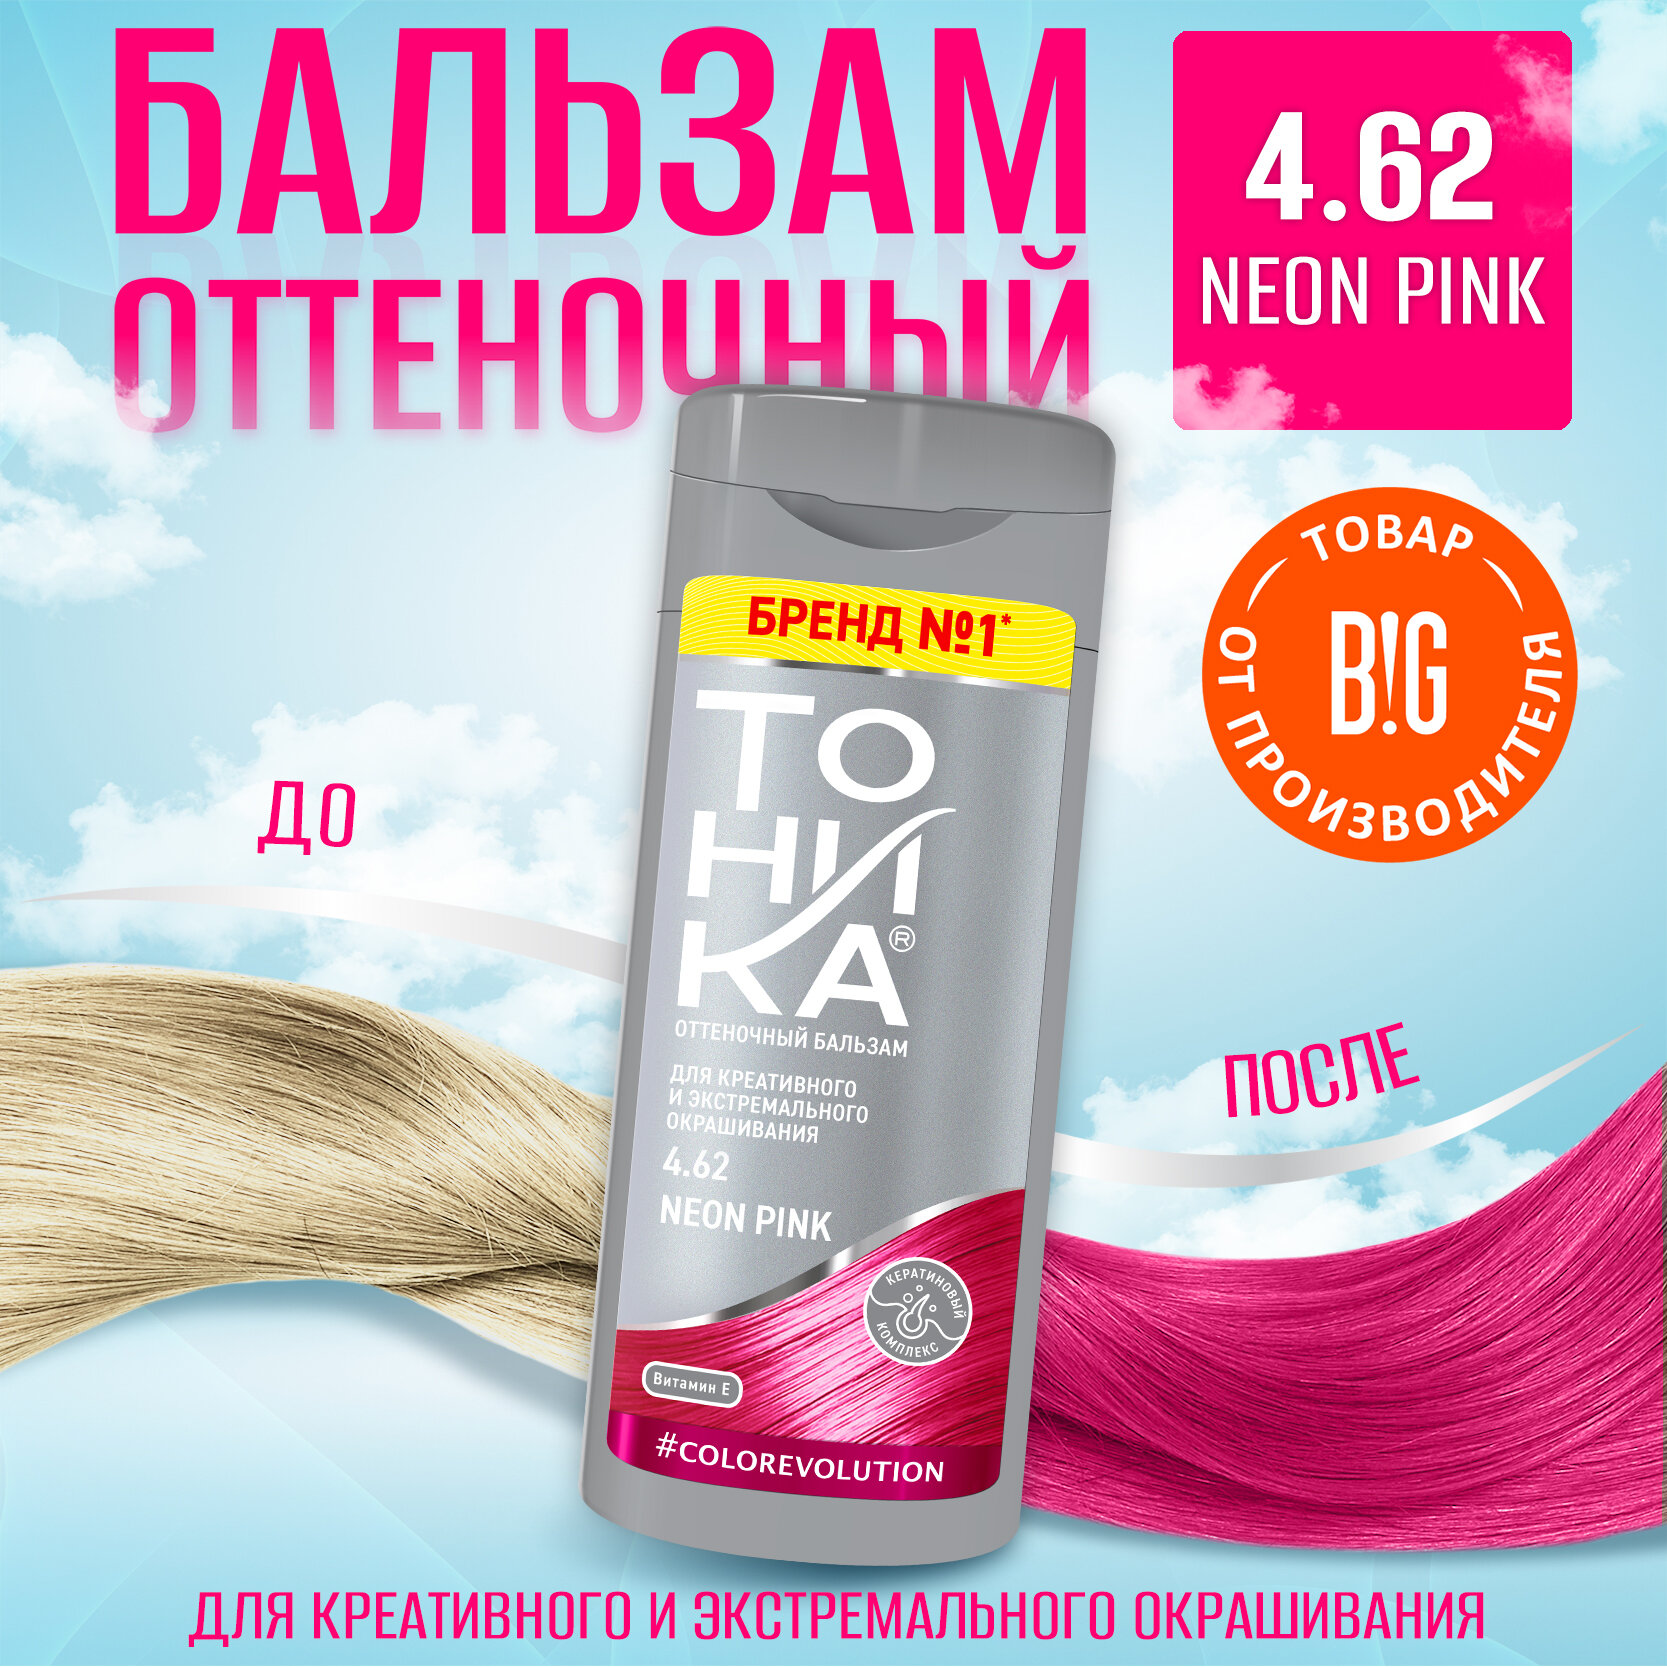 Тоника бальзам оттеночный для волос яркое окрашивание 4.62 Neon Pink